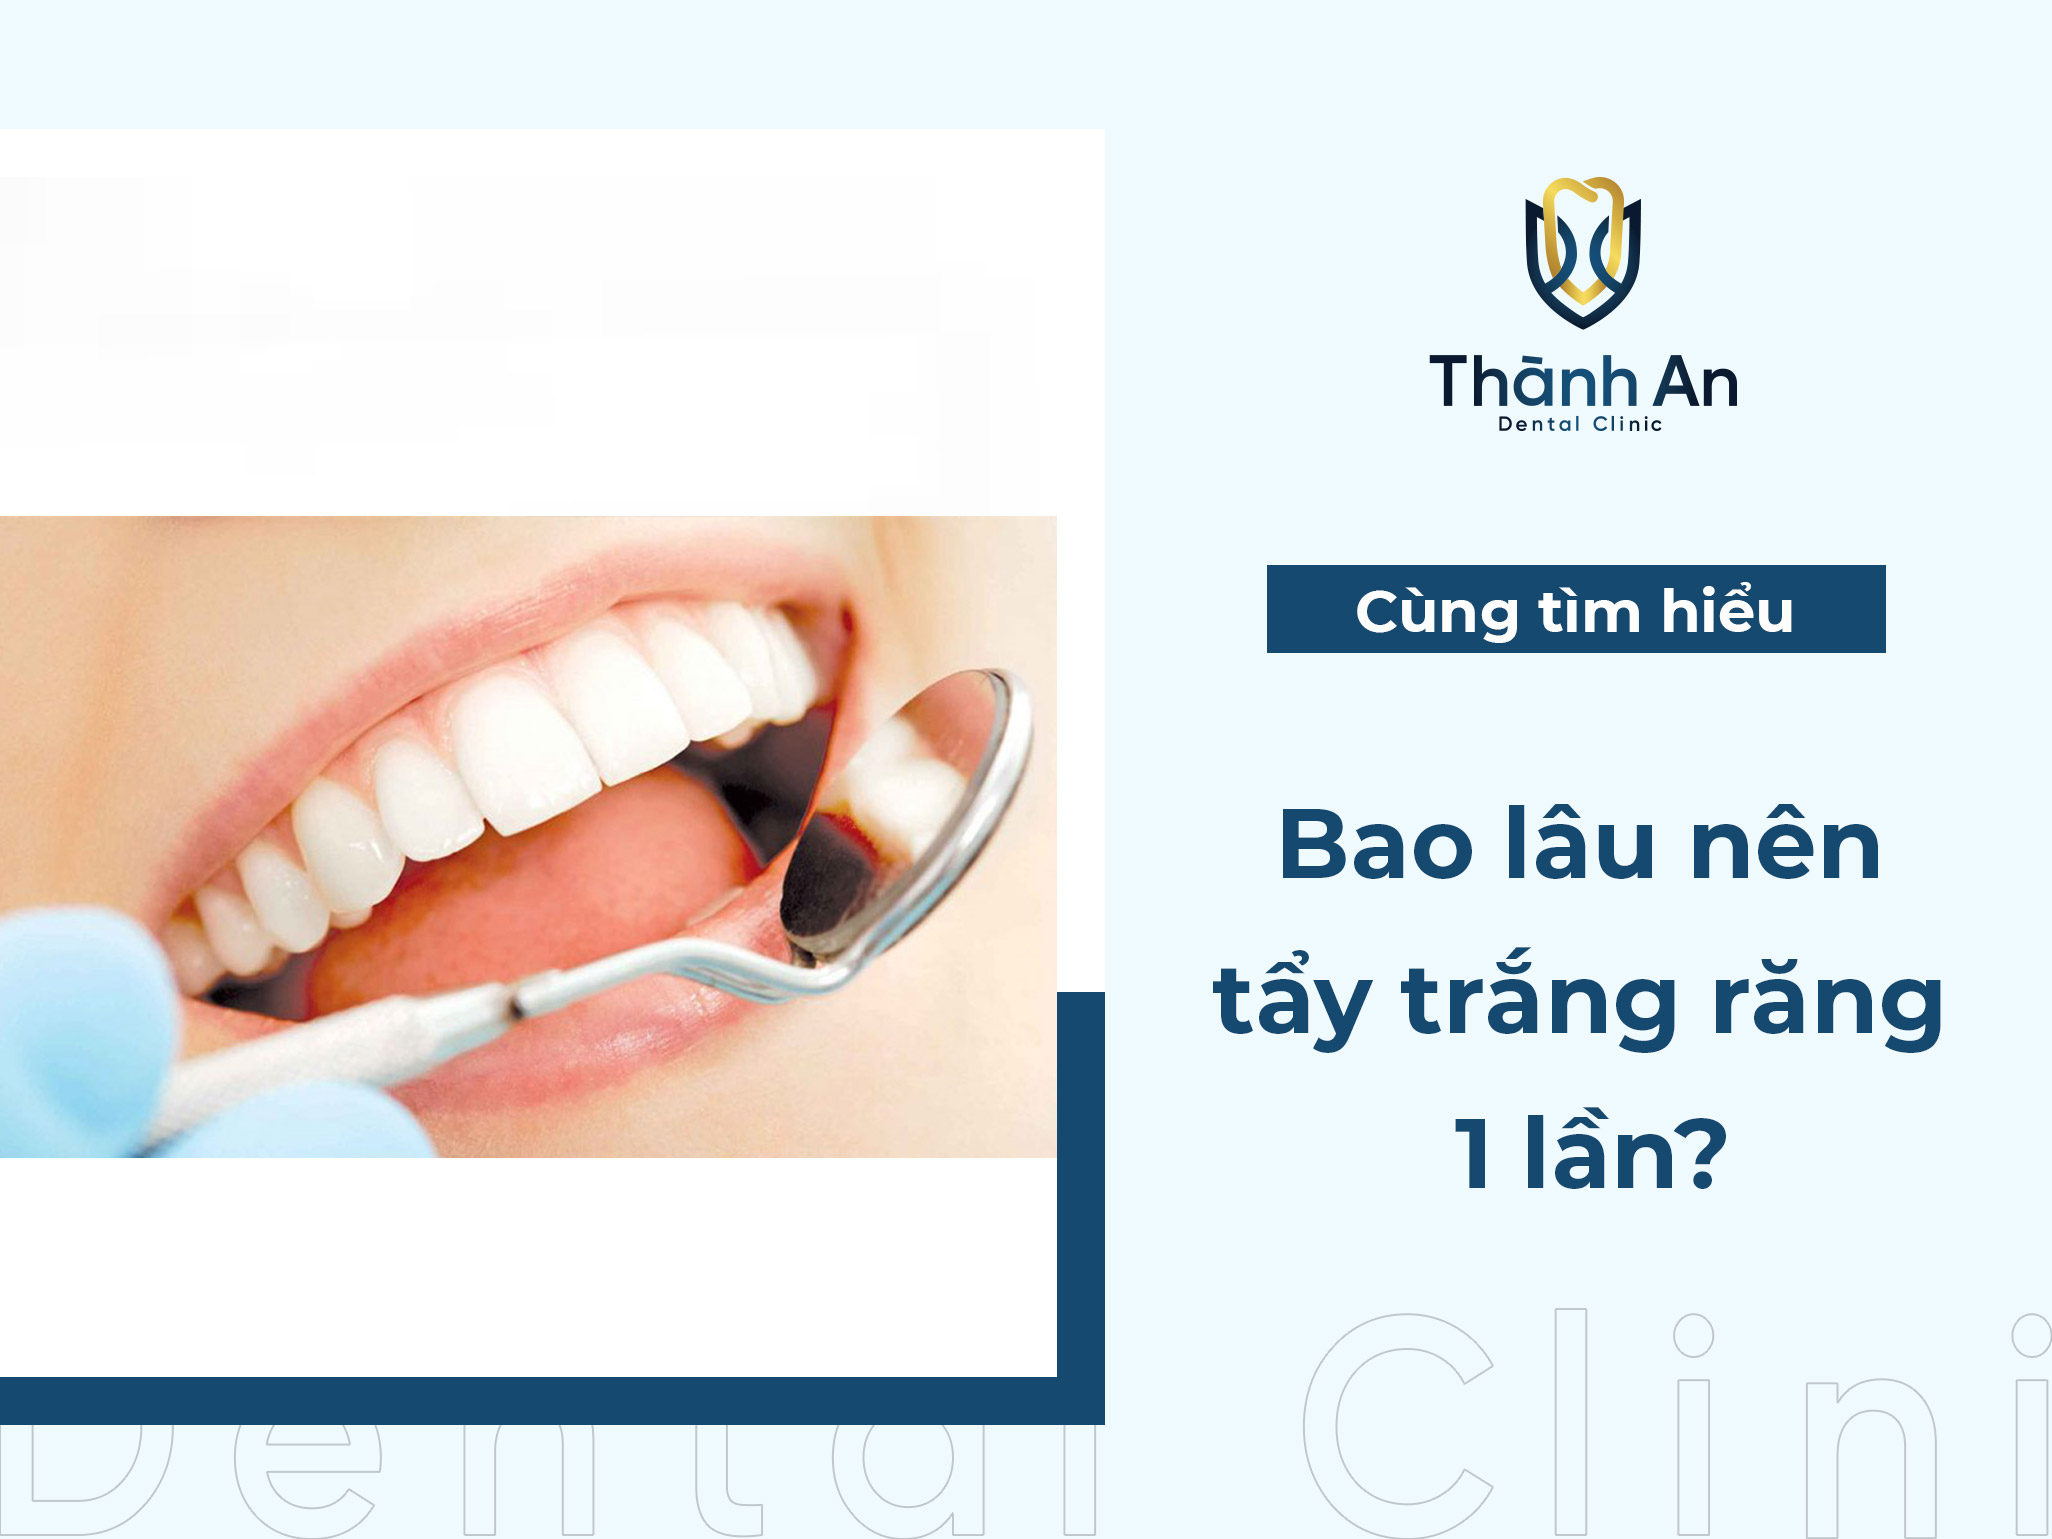 [GIẢI ĐÁP] Bao lâu nên tẩy trắng răng 1 lần?